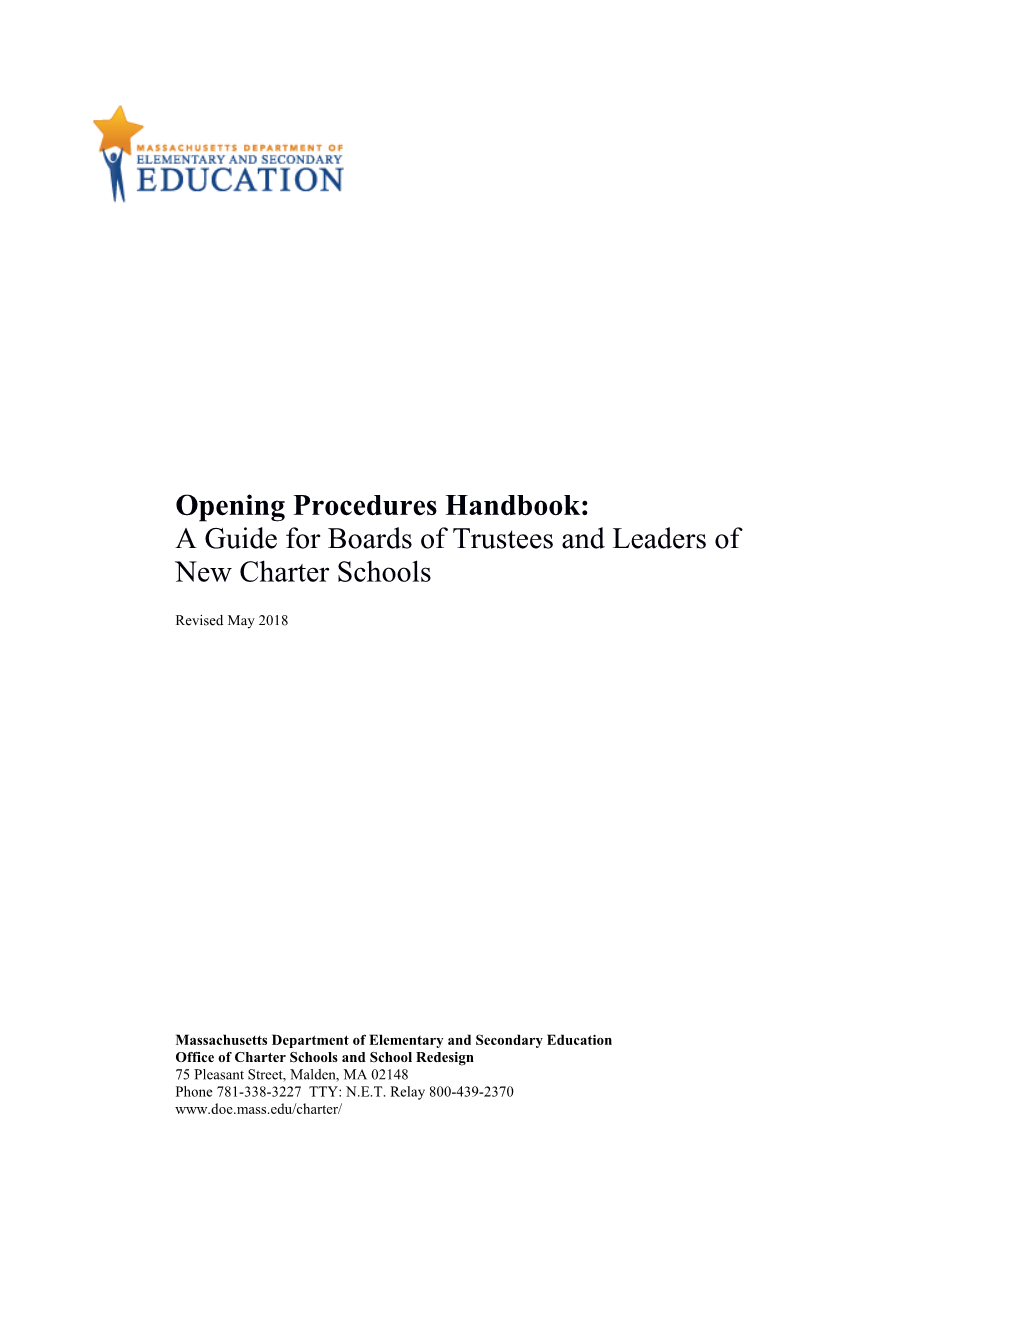 Charter School Opening Procedures Handbook June 2018